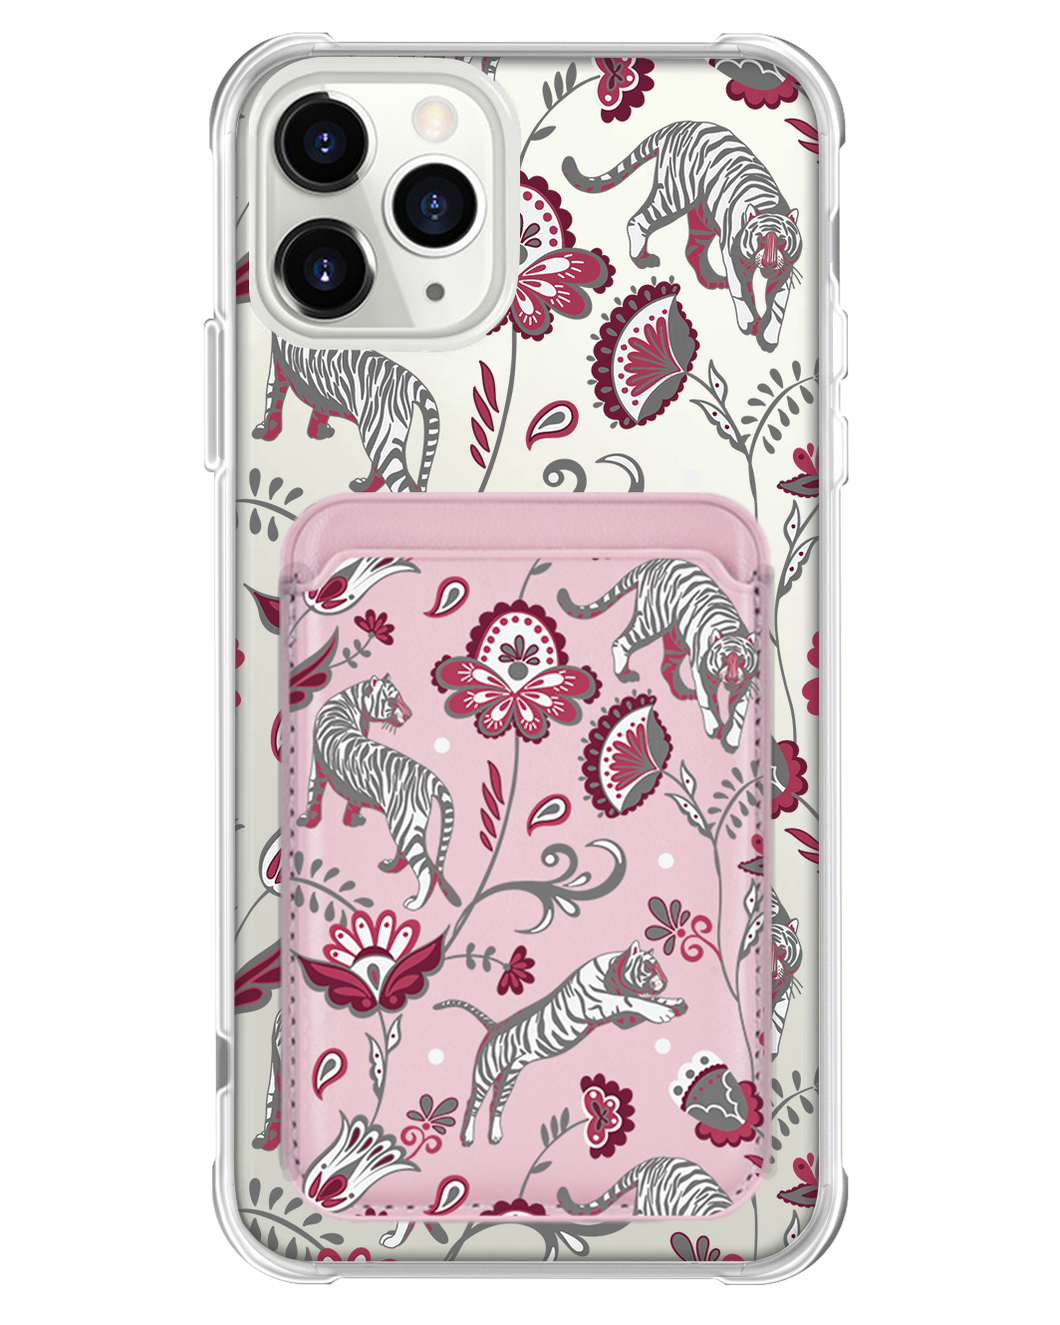 iPhone Magnetic Wallet Case - Tiger & Floral 6.0